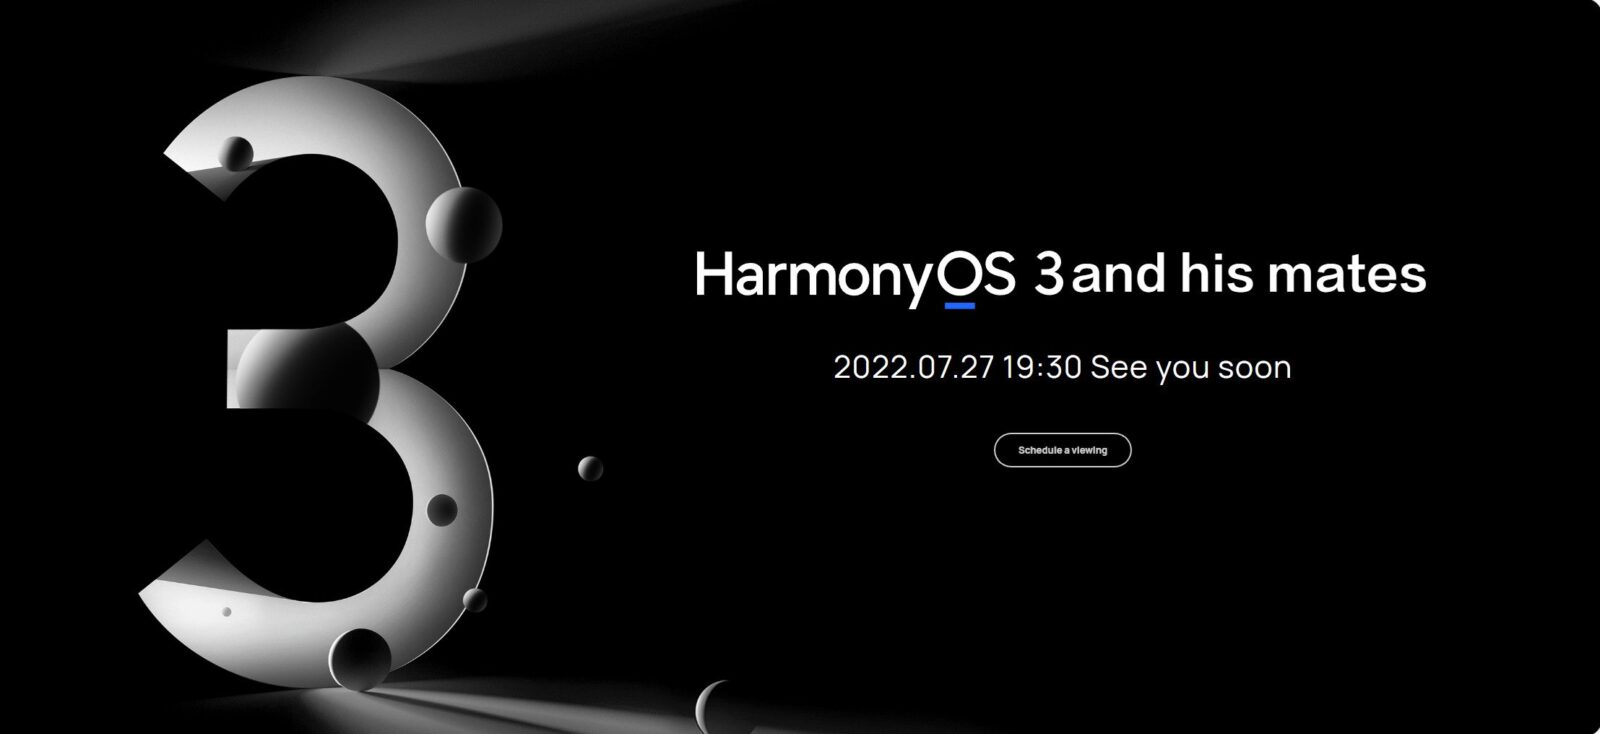 HarmonyOS 3 : Huawei annonce une conférence pour le 27 juillet 2022 Actualité